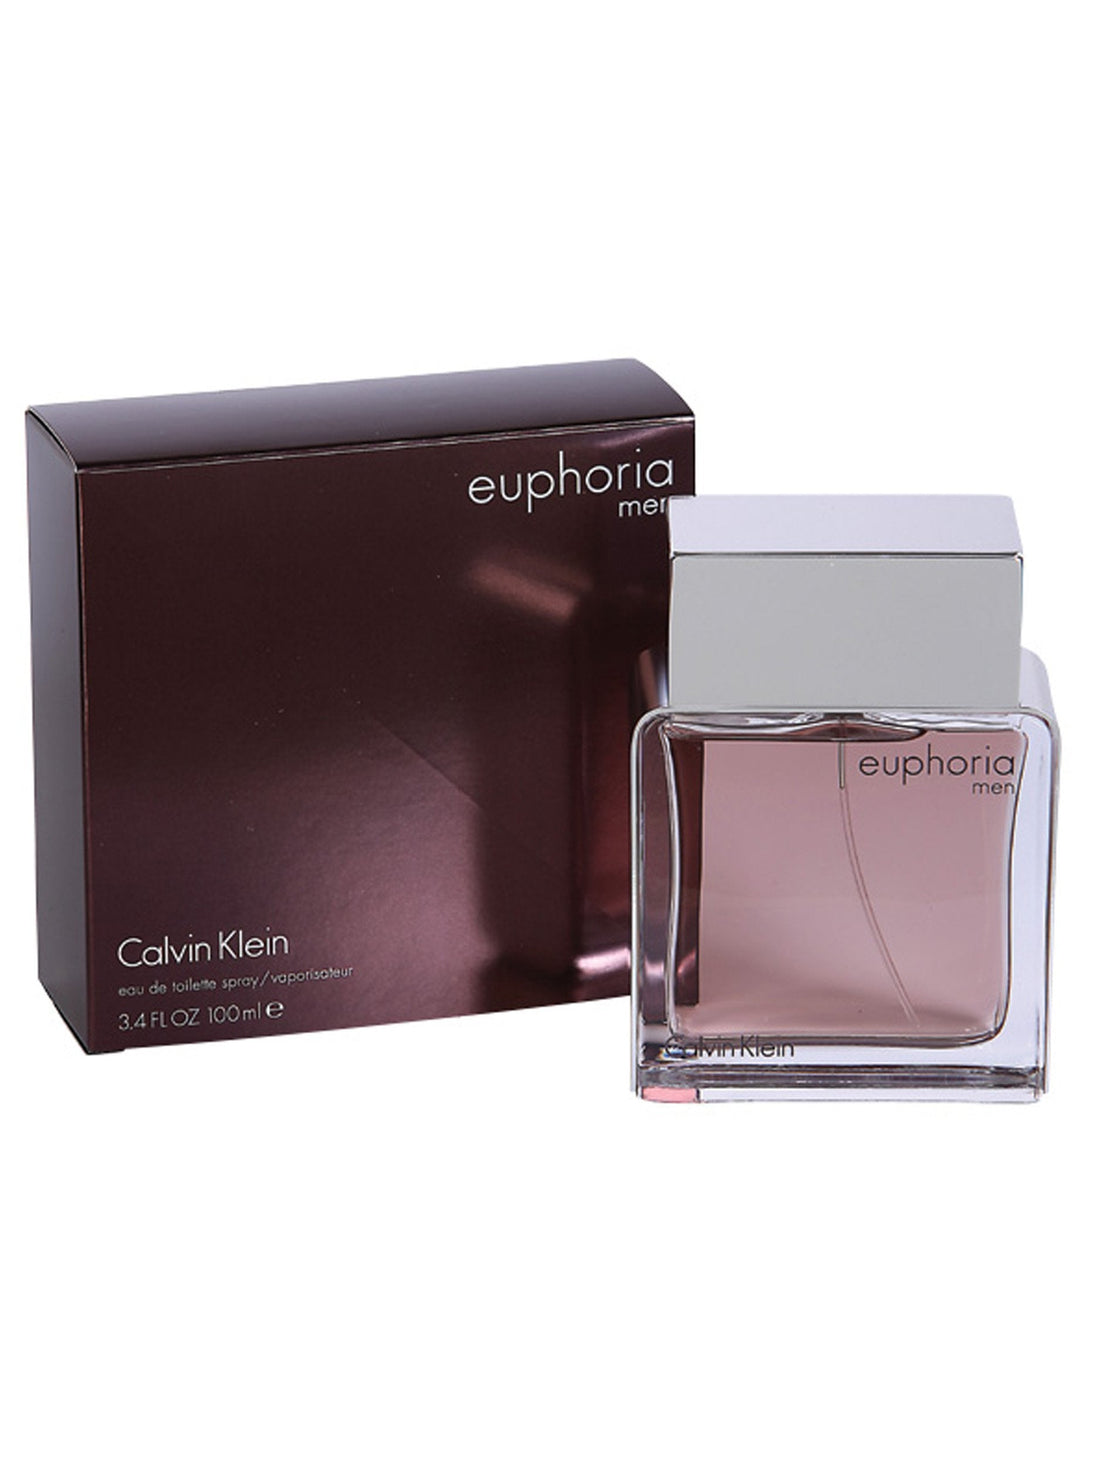 Perfume para Caballero CALVIN KLEIN * EUPHORIA MEN 3.4 OZ EDT SPRAY